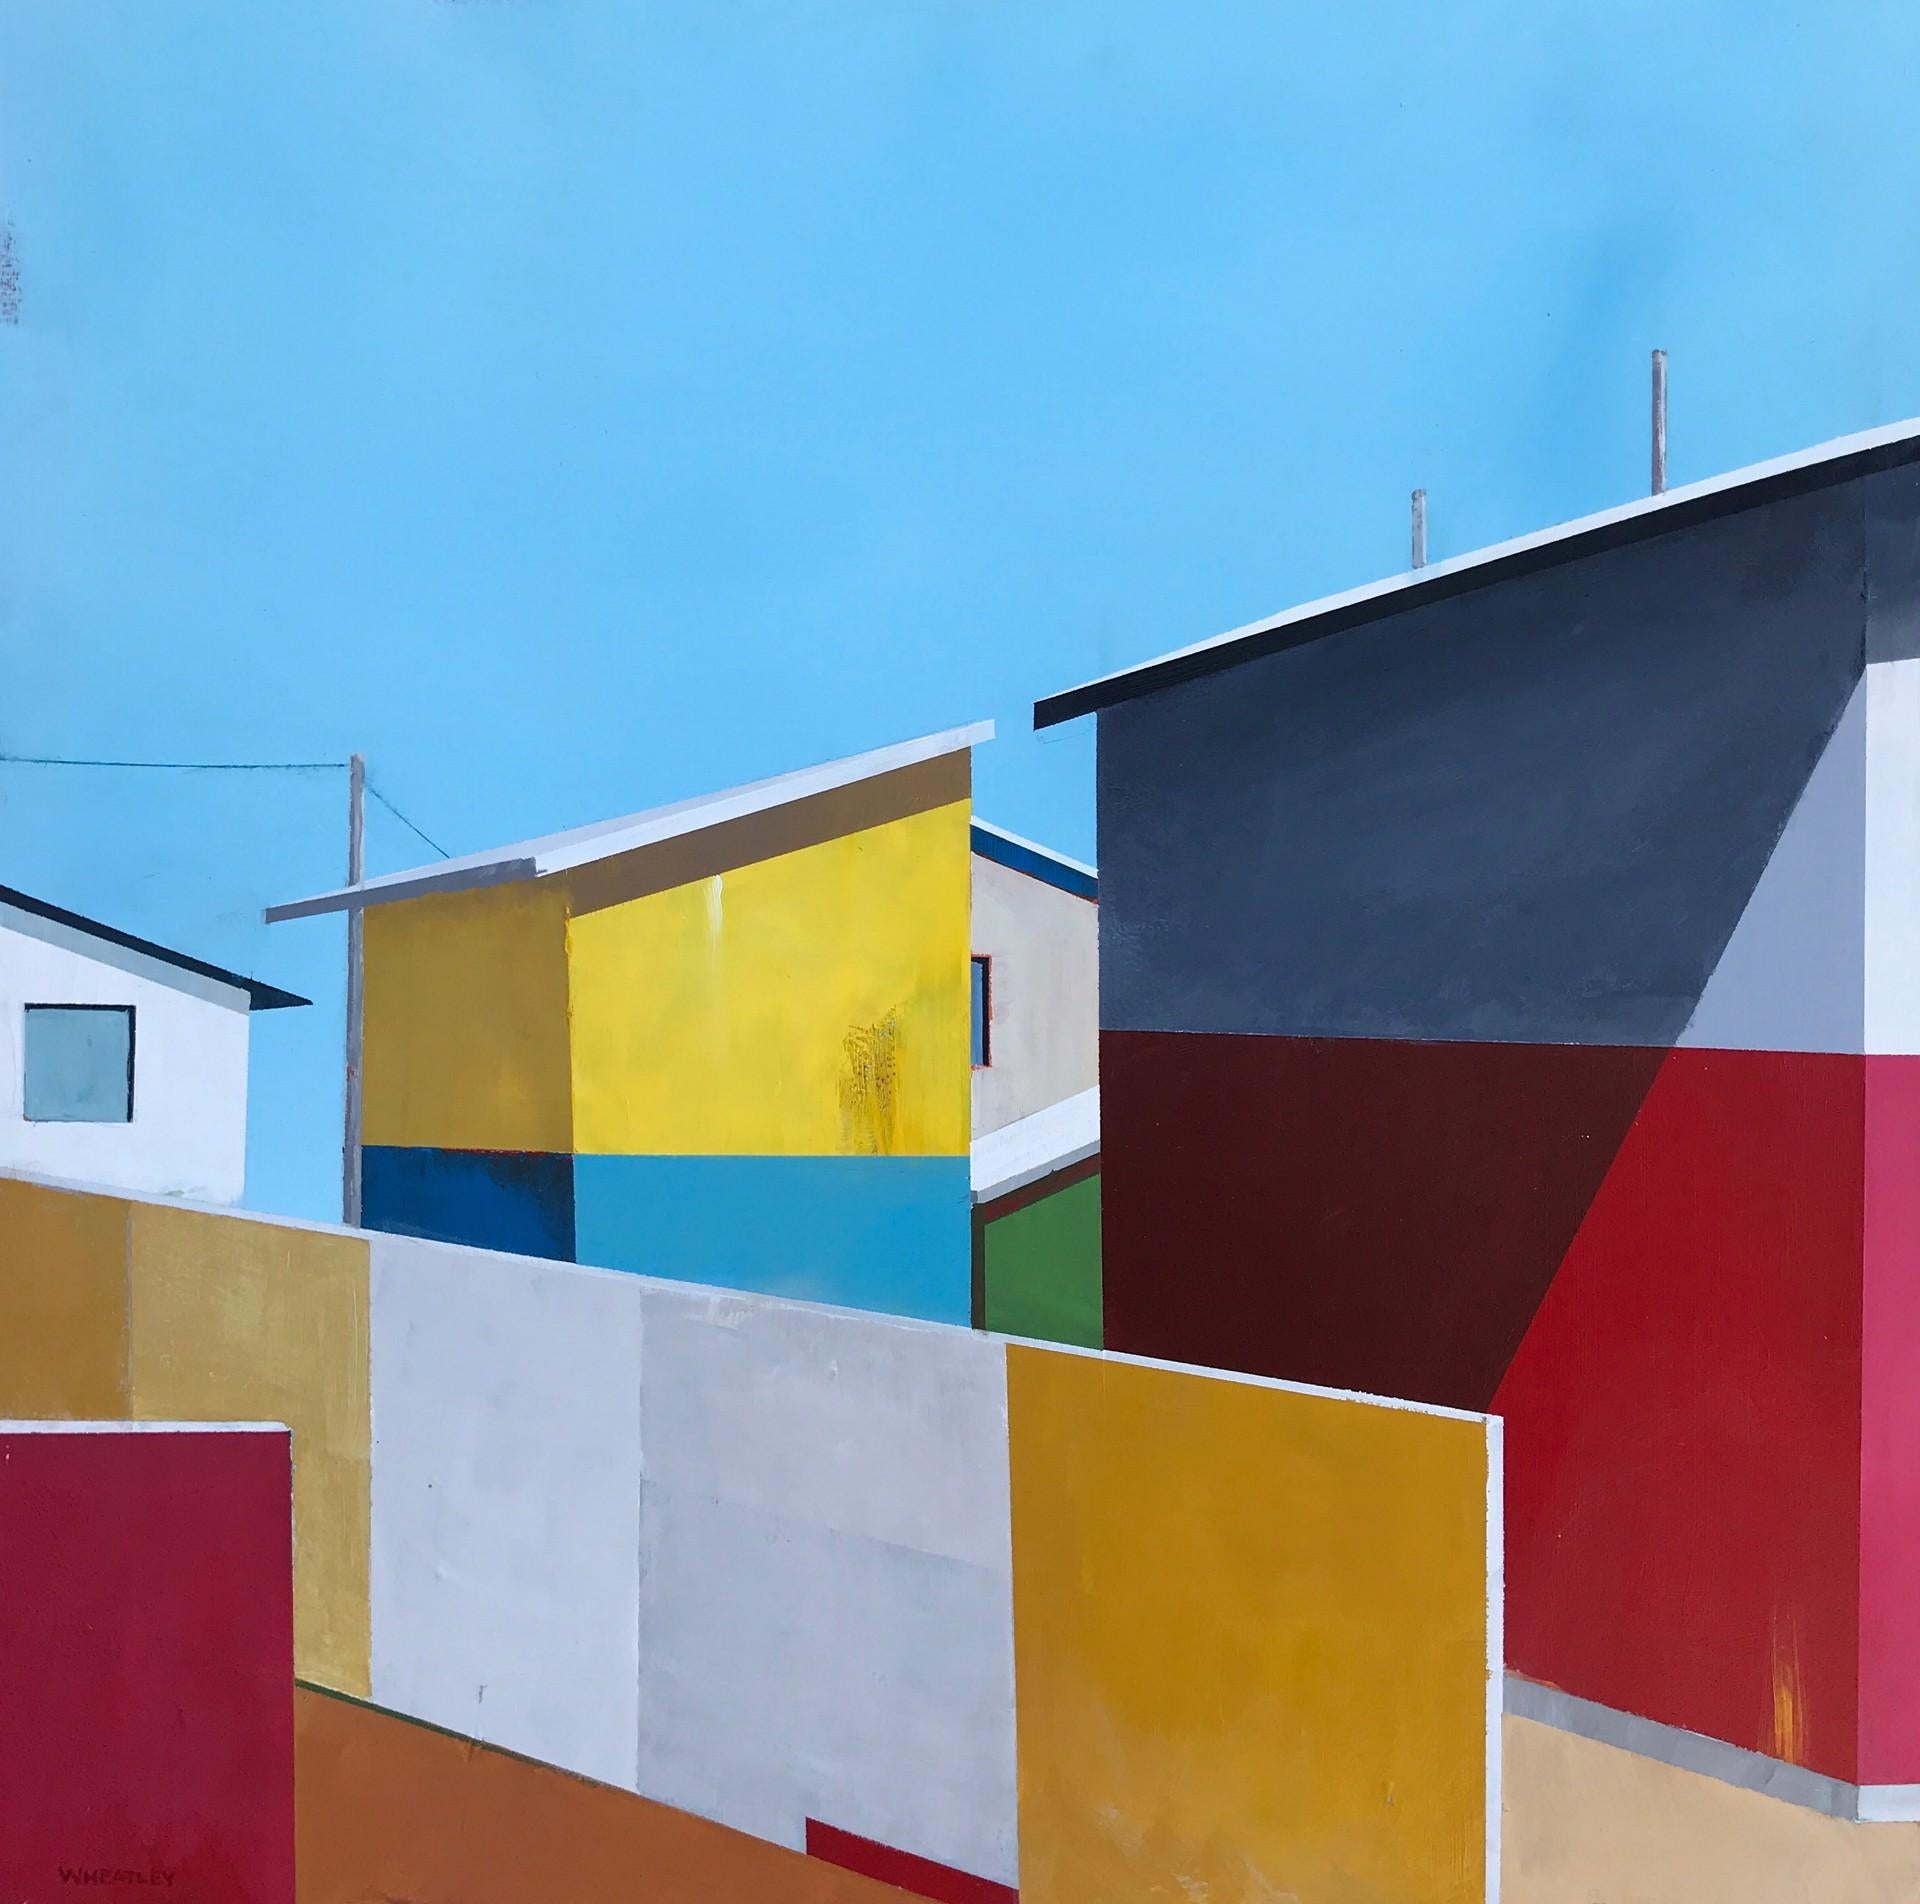 San Fernando - Art by Justin Wheatley